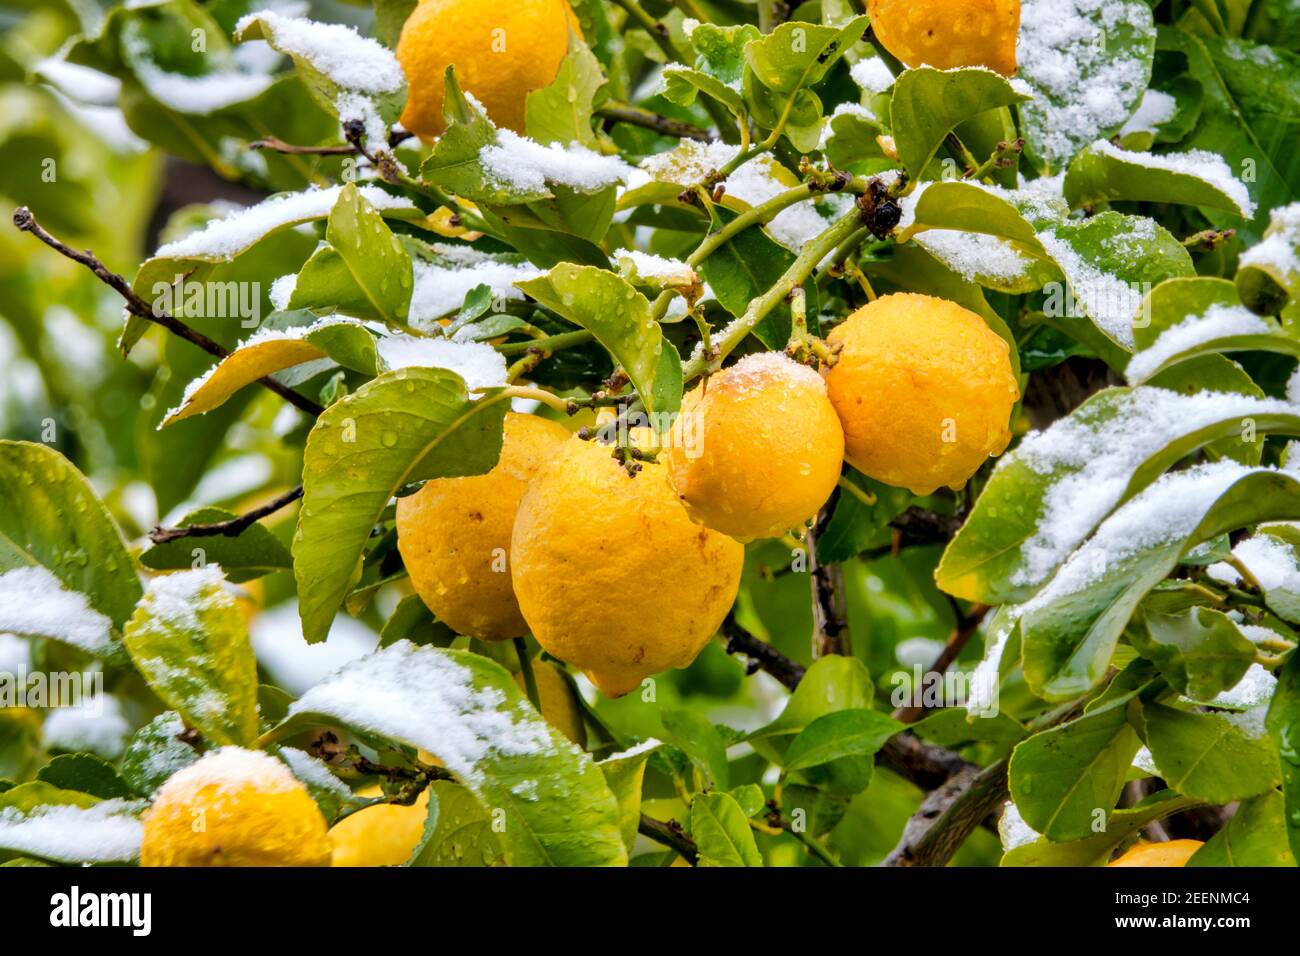 Nieve en un limonero (citrus limon) Foto de stock